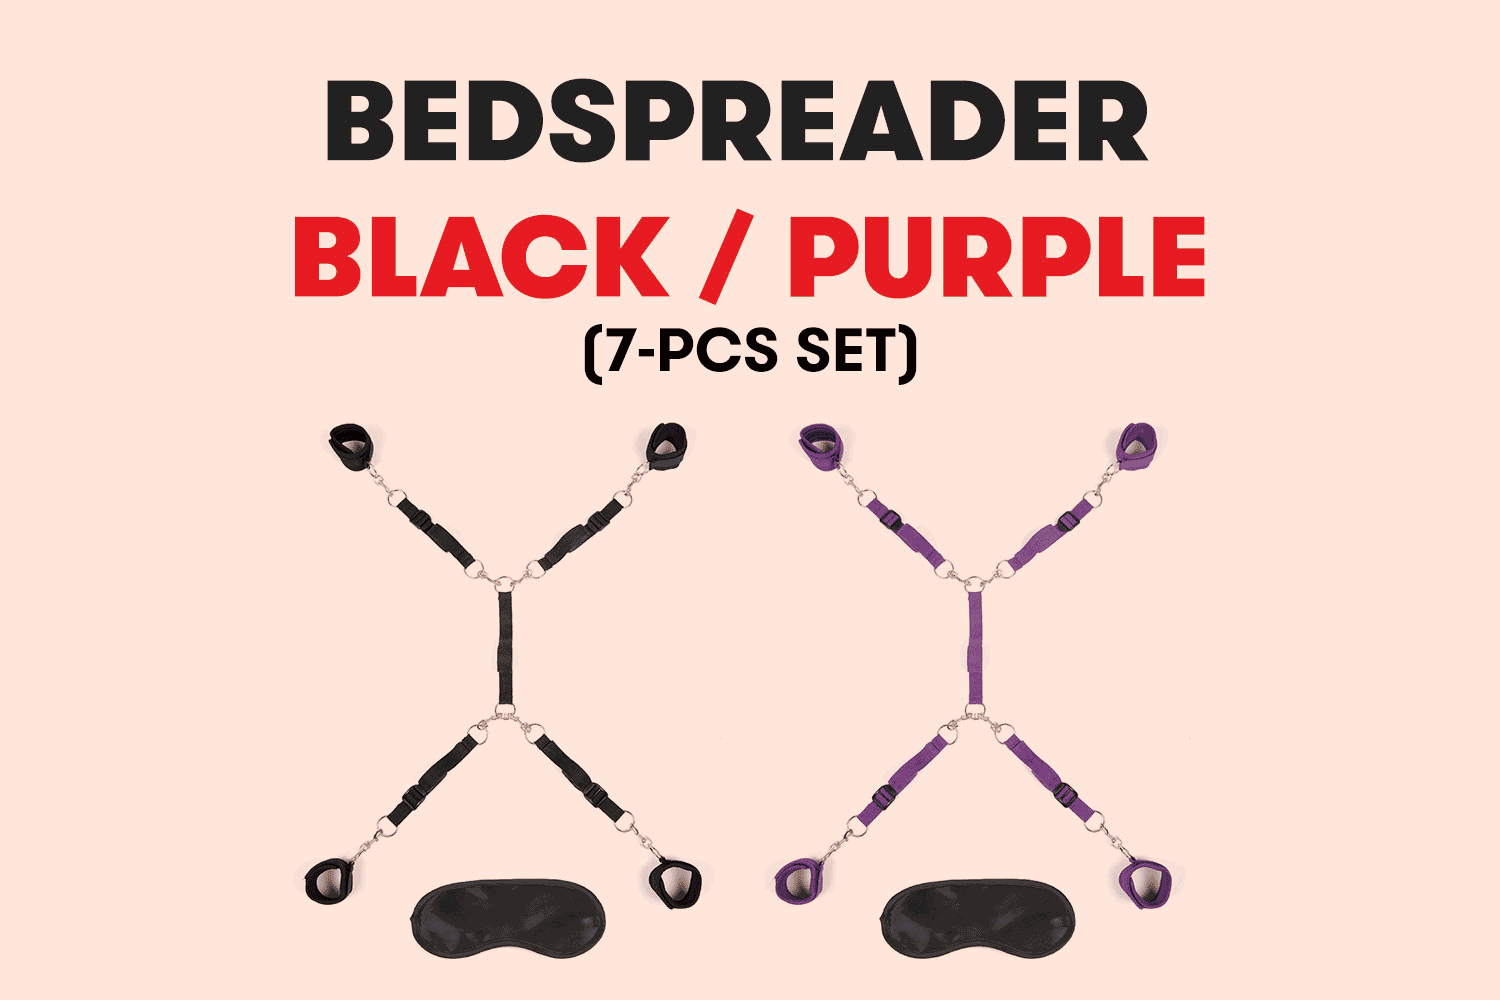 Bedspreader - Under Bed Restraint Black and Purple (7-pcs Set)